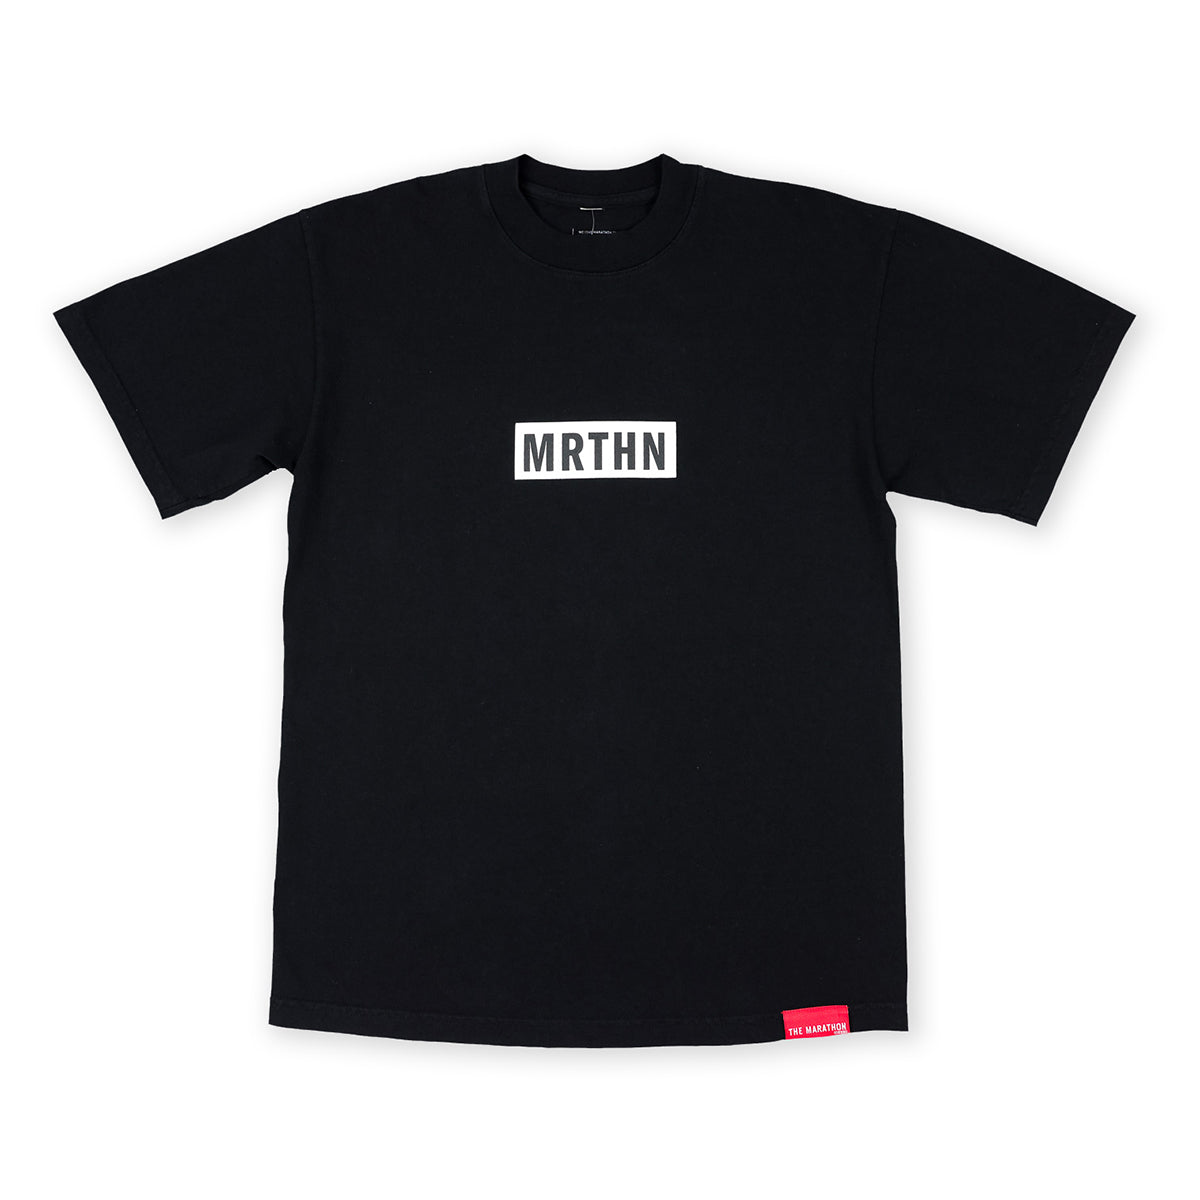 MRTHN T-shirt - Black/White - Front